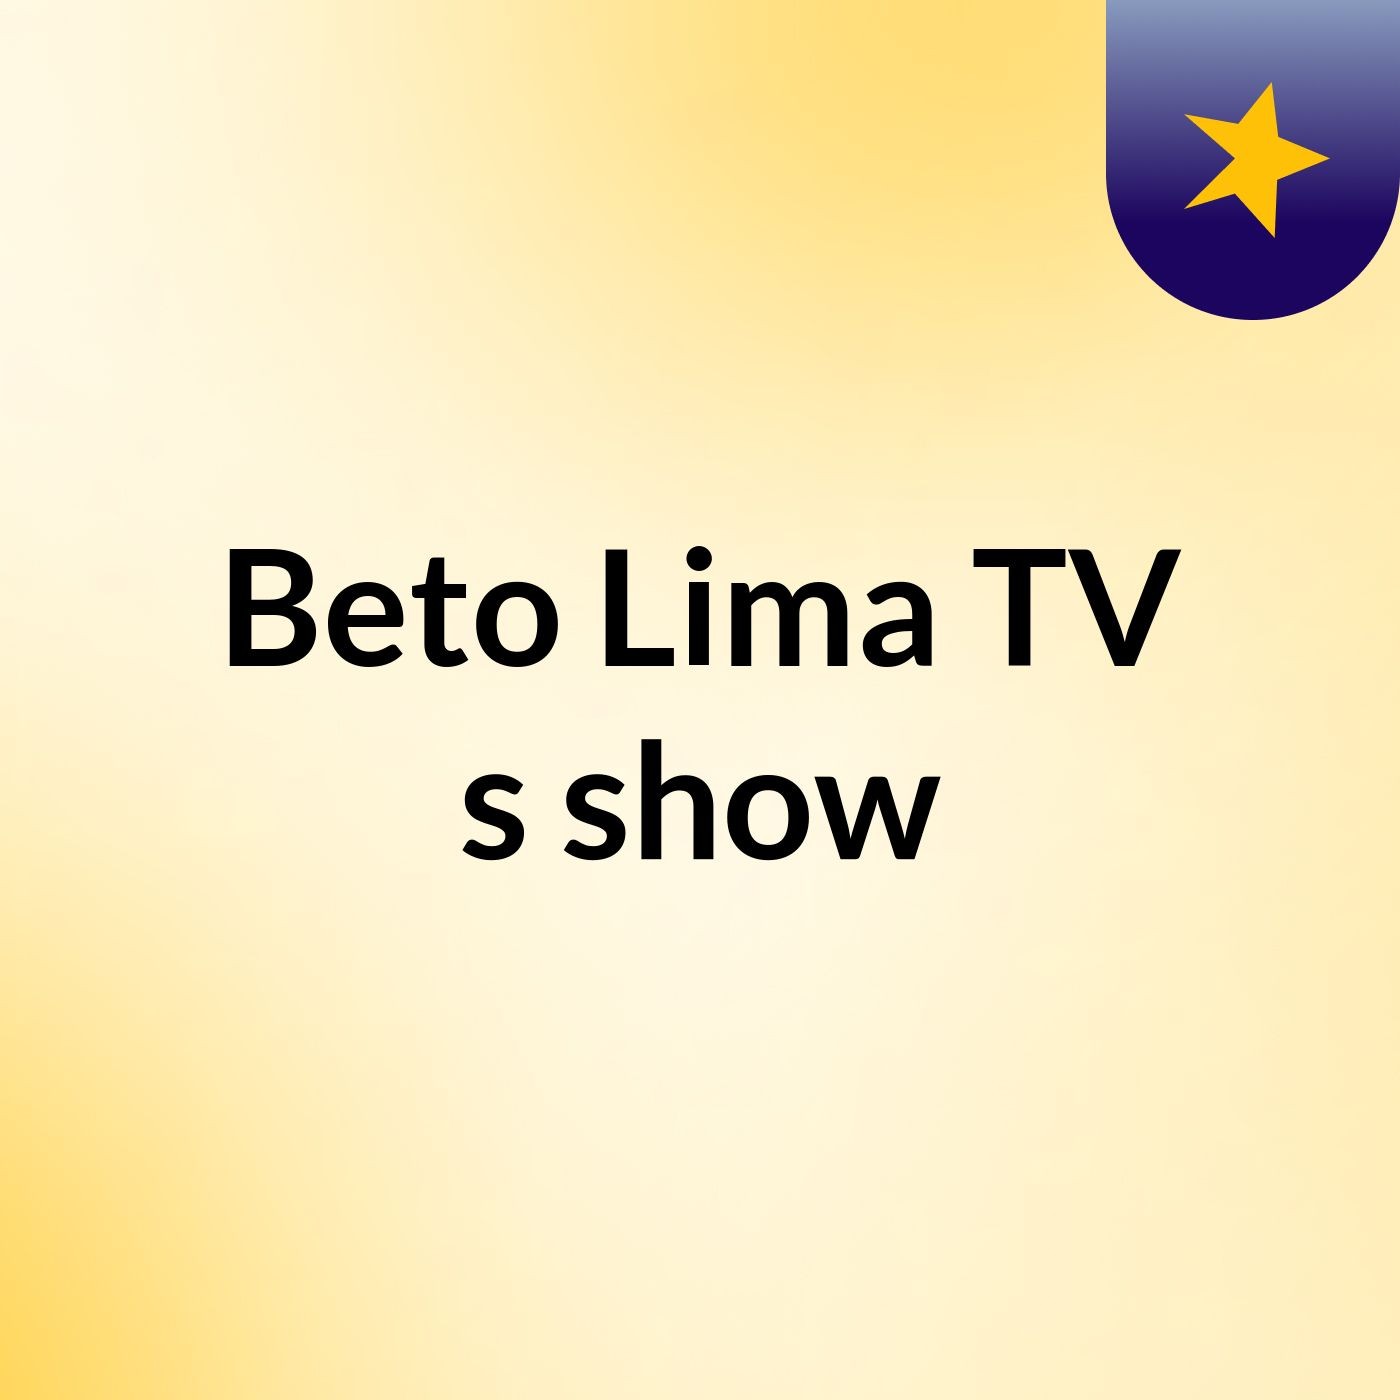 Beto Lima TV's show